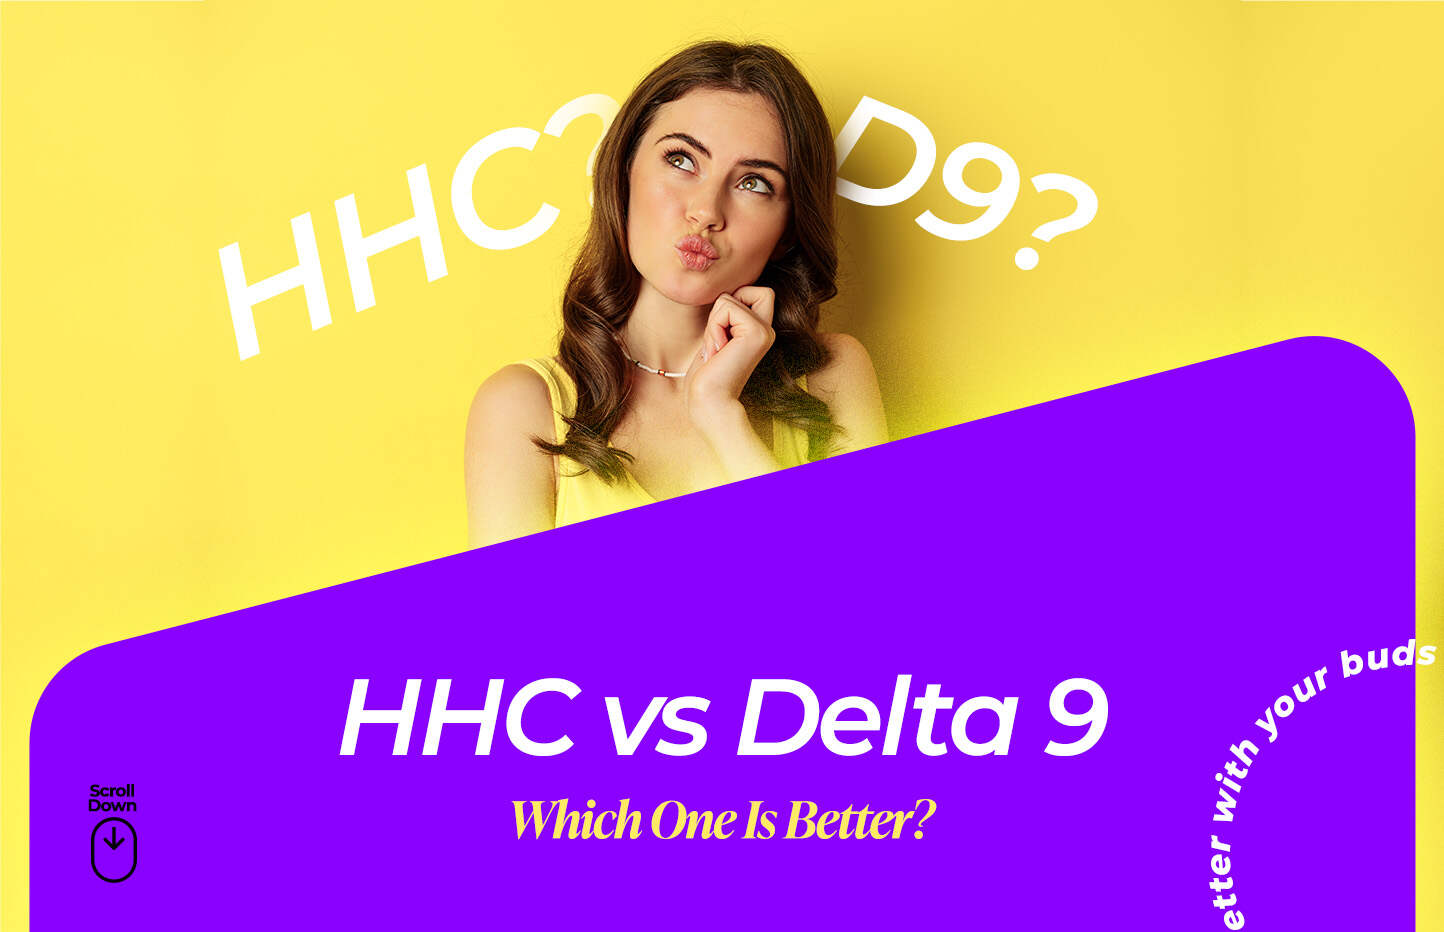 hhc vs delta 8